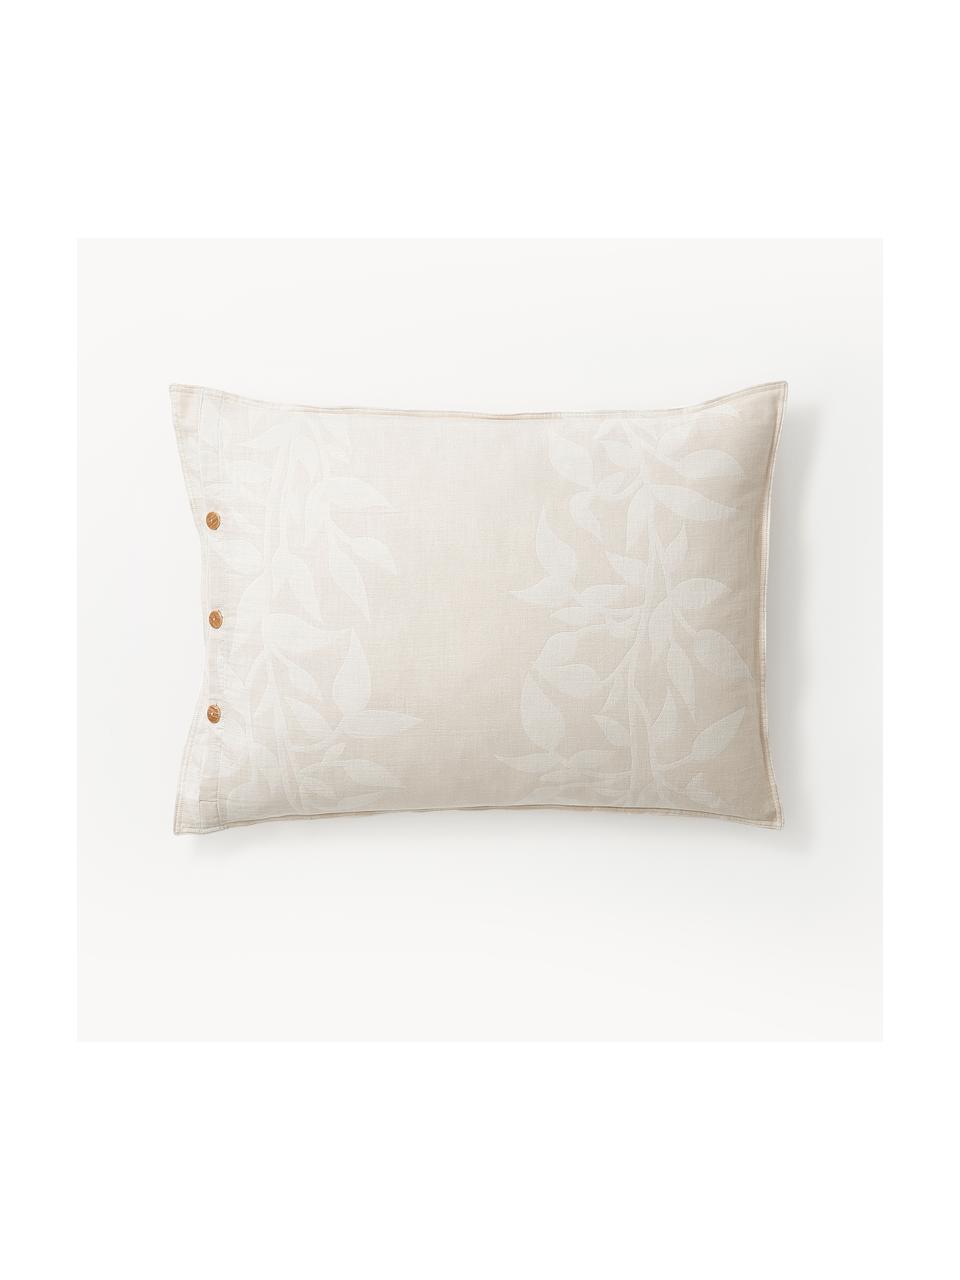 Taie d'oreiller réversible mousseline beige à motif floral Jasmina, Beige, larg. 50 x long. 70 cm